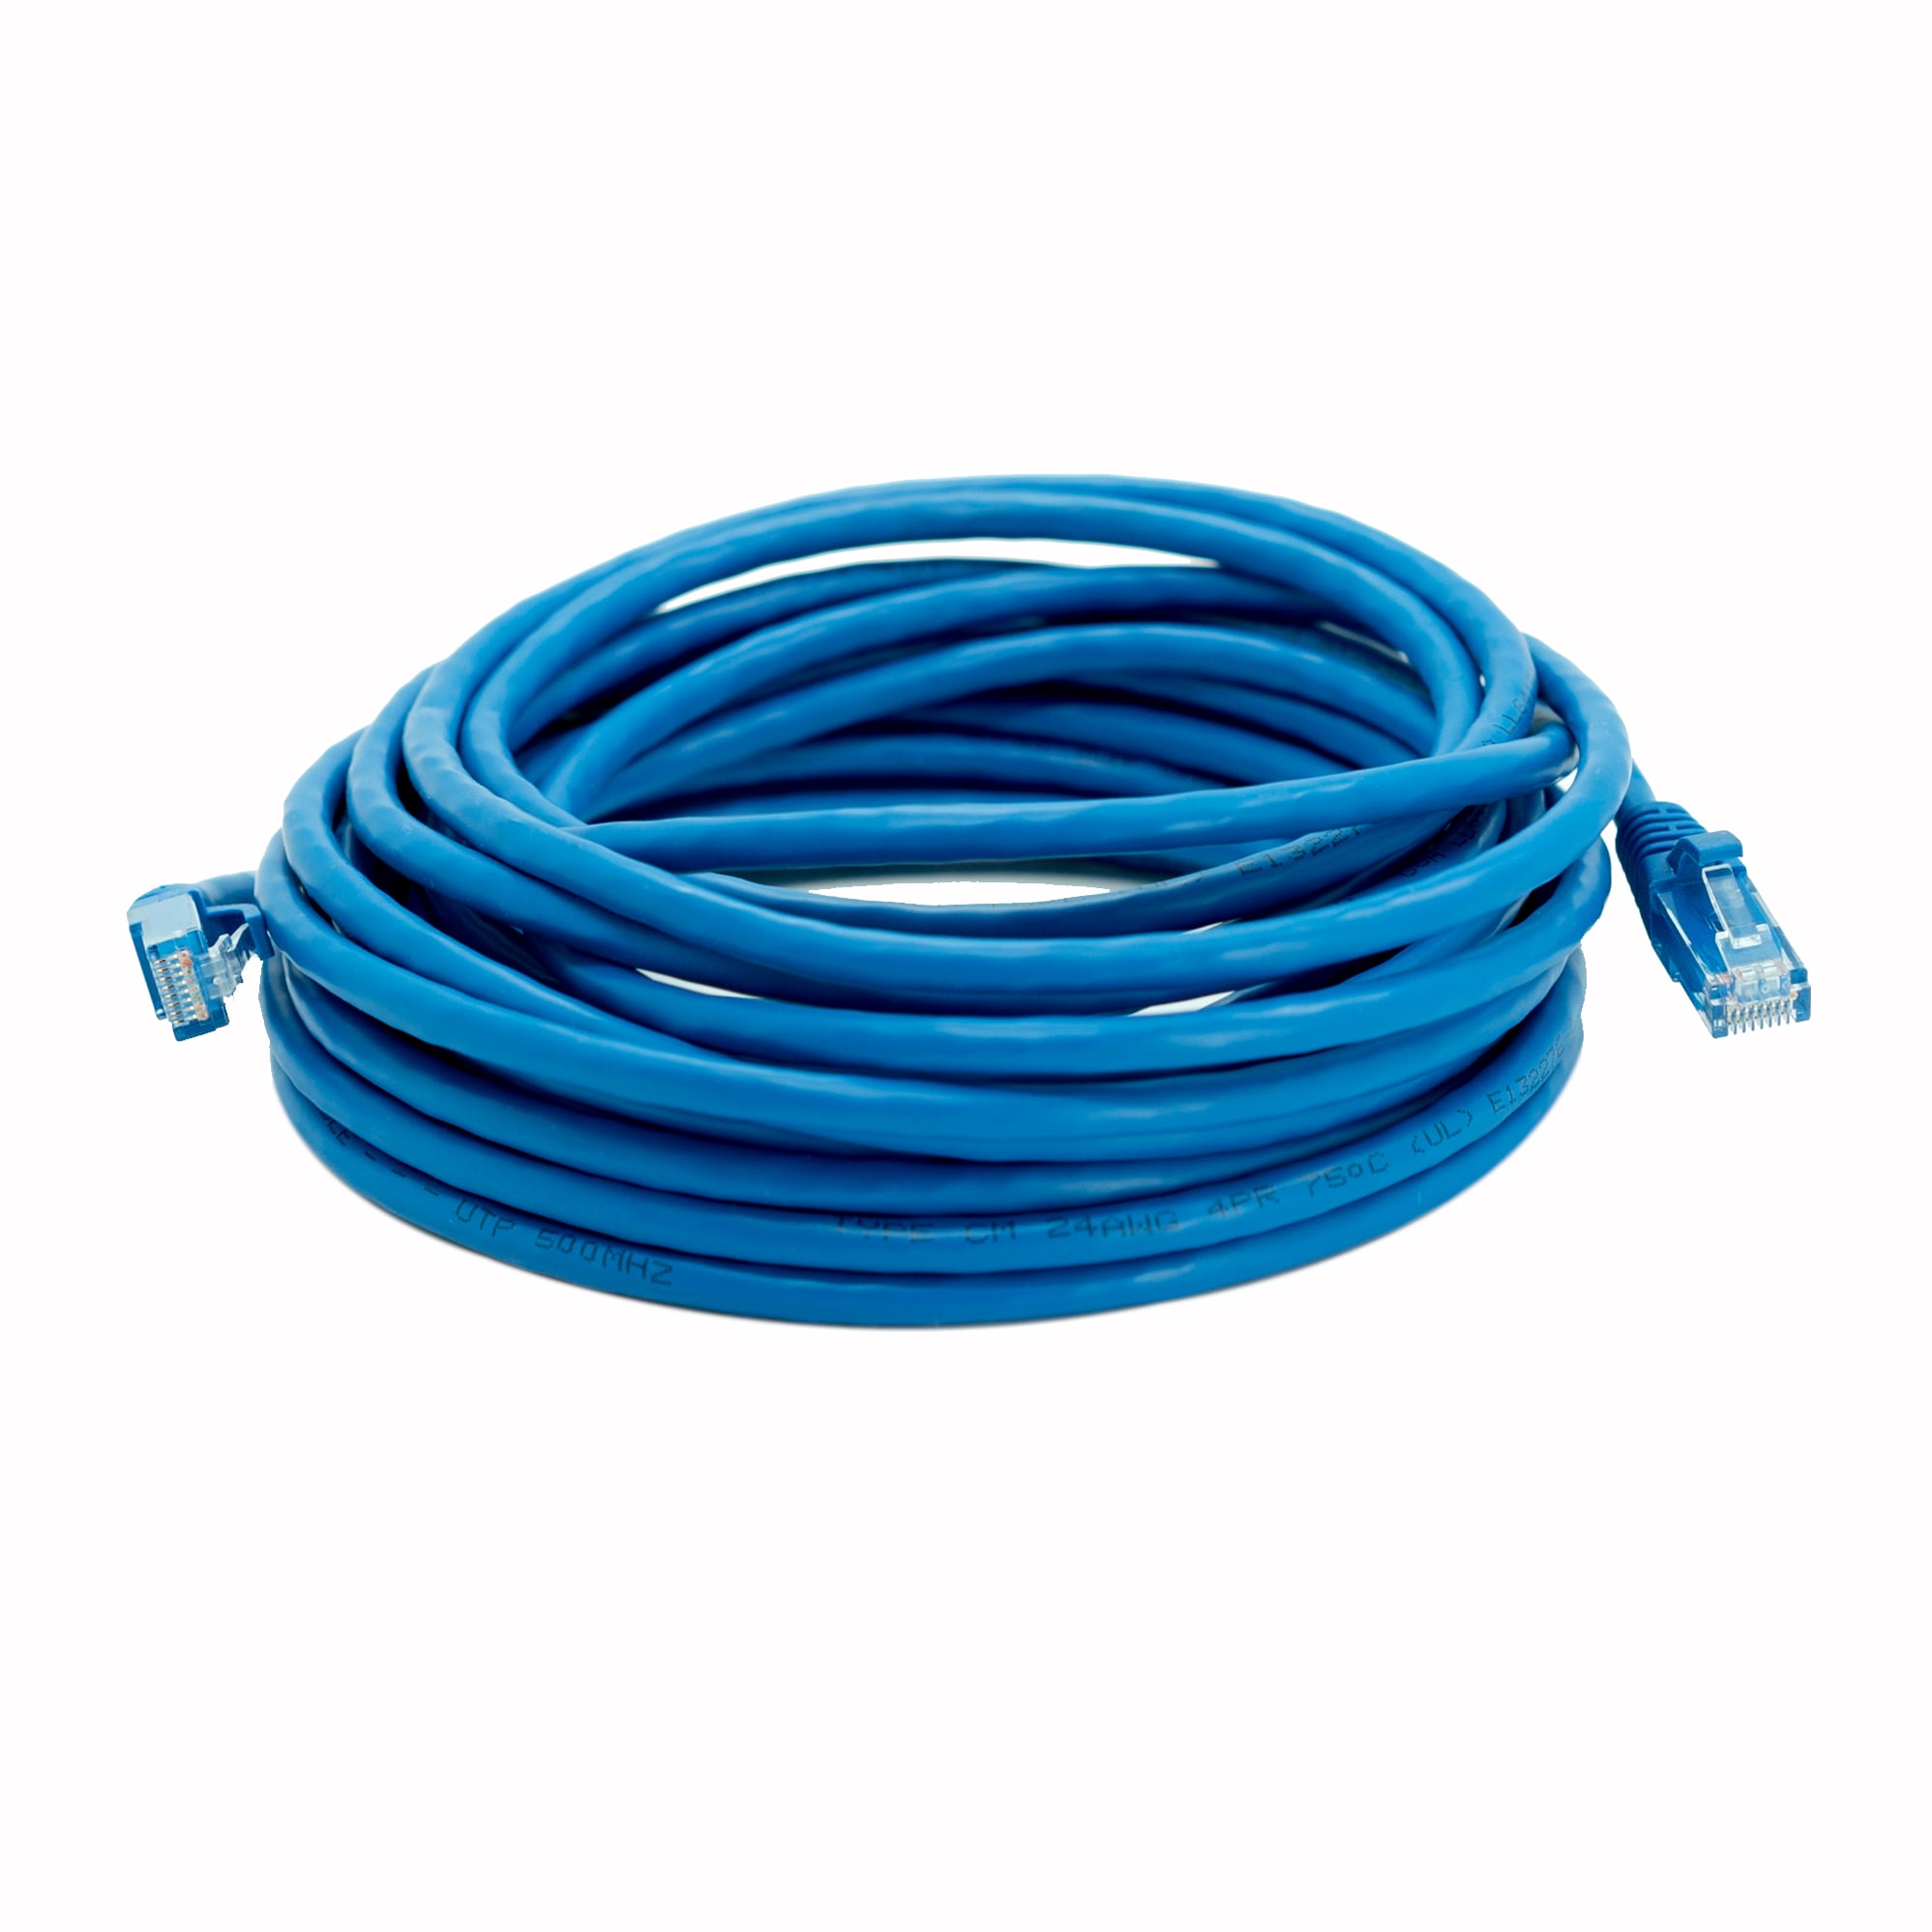 Câble Ethernet RJ45 - 50cm - Cat.6 - Gris - PILES 974